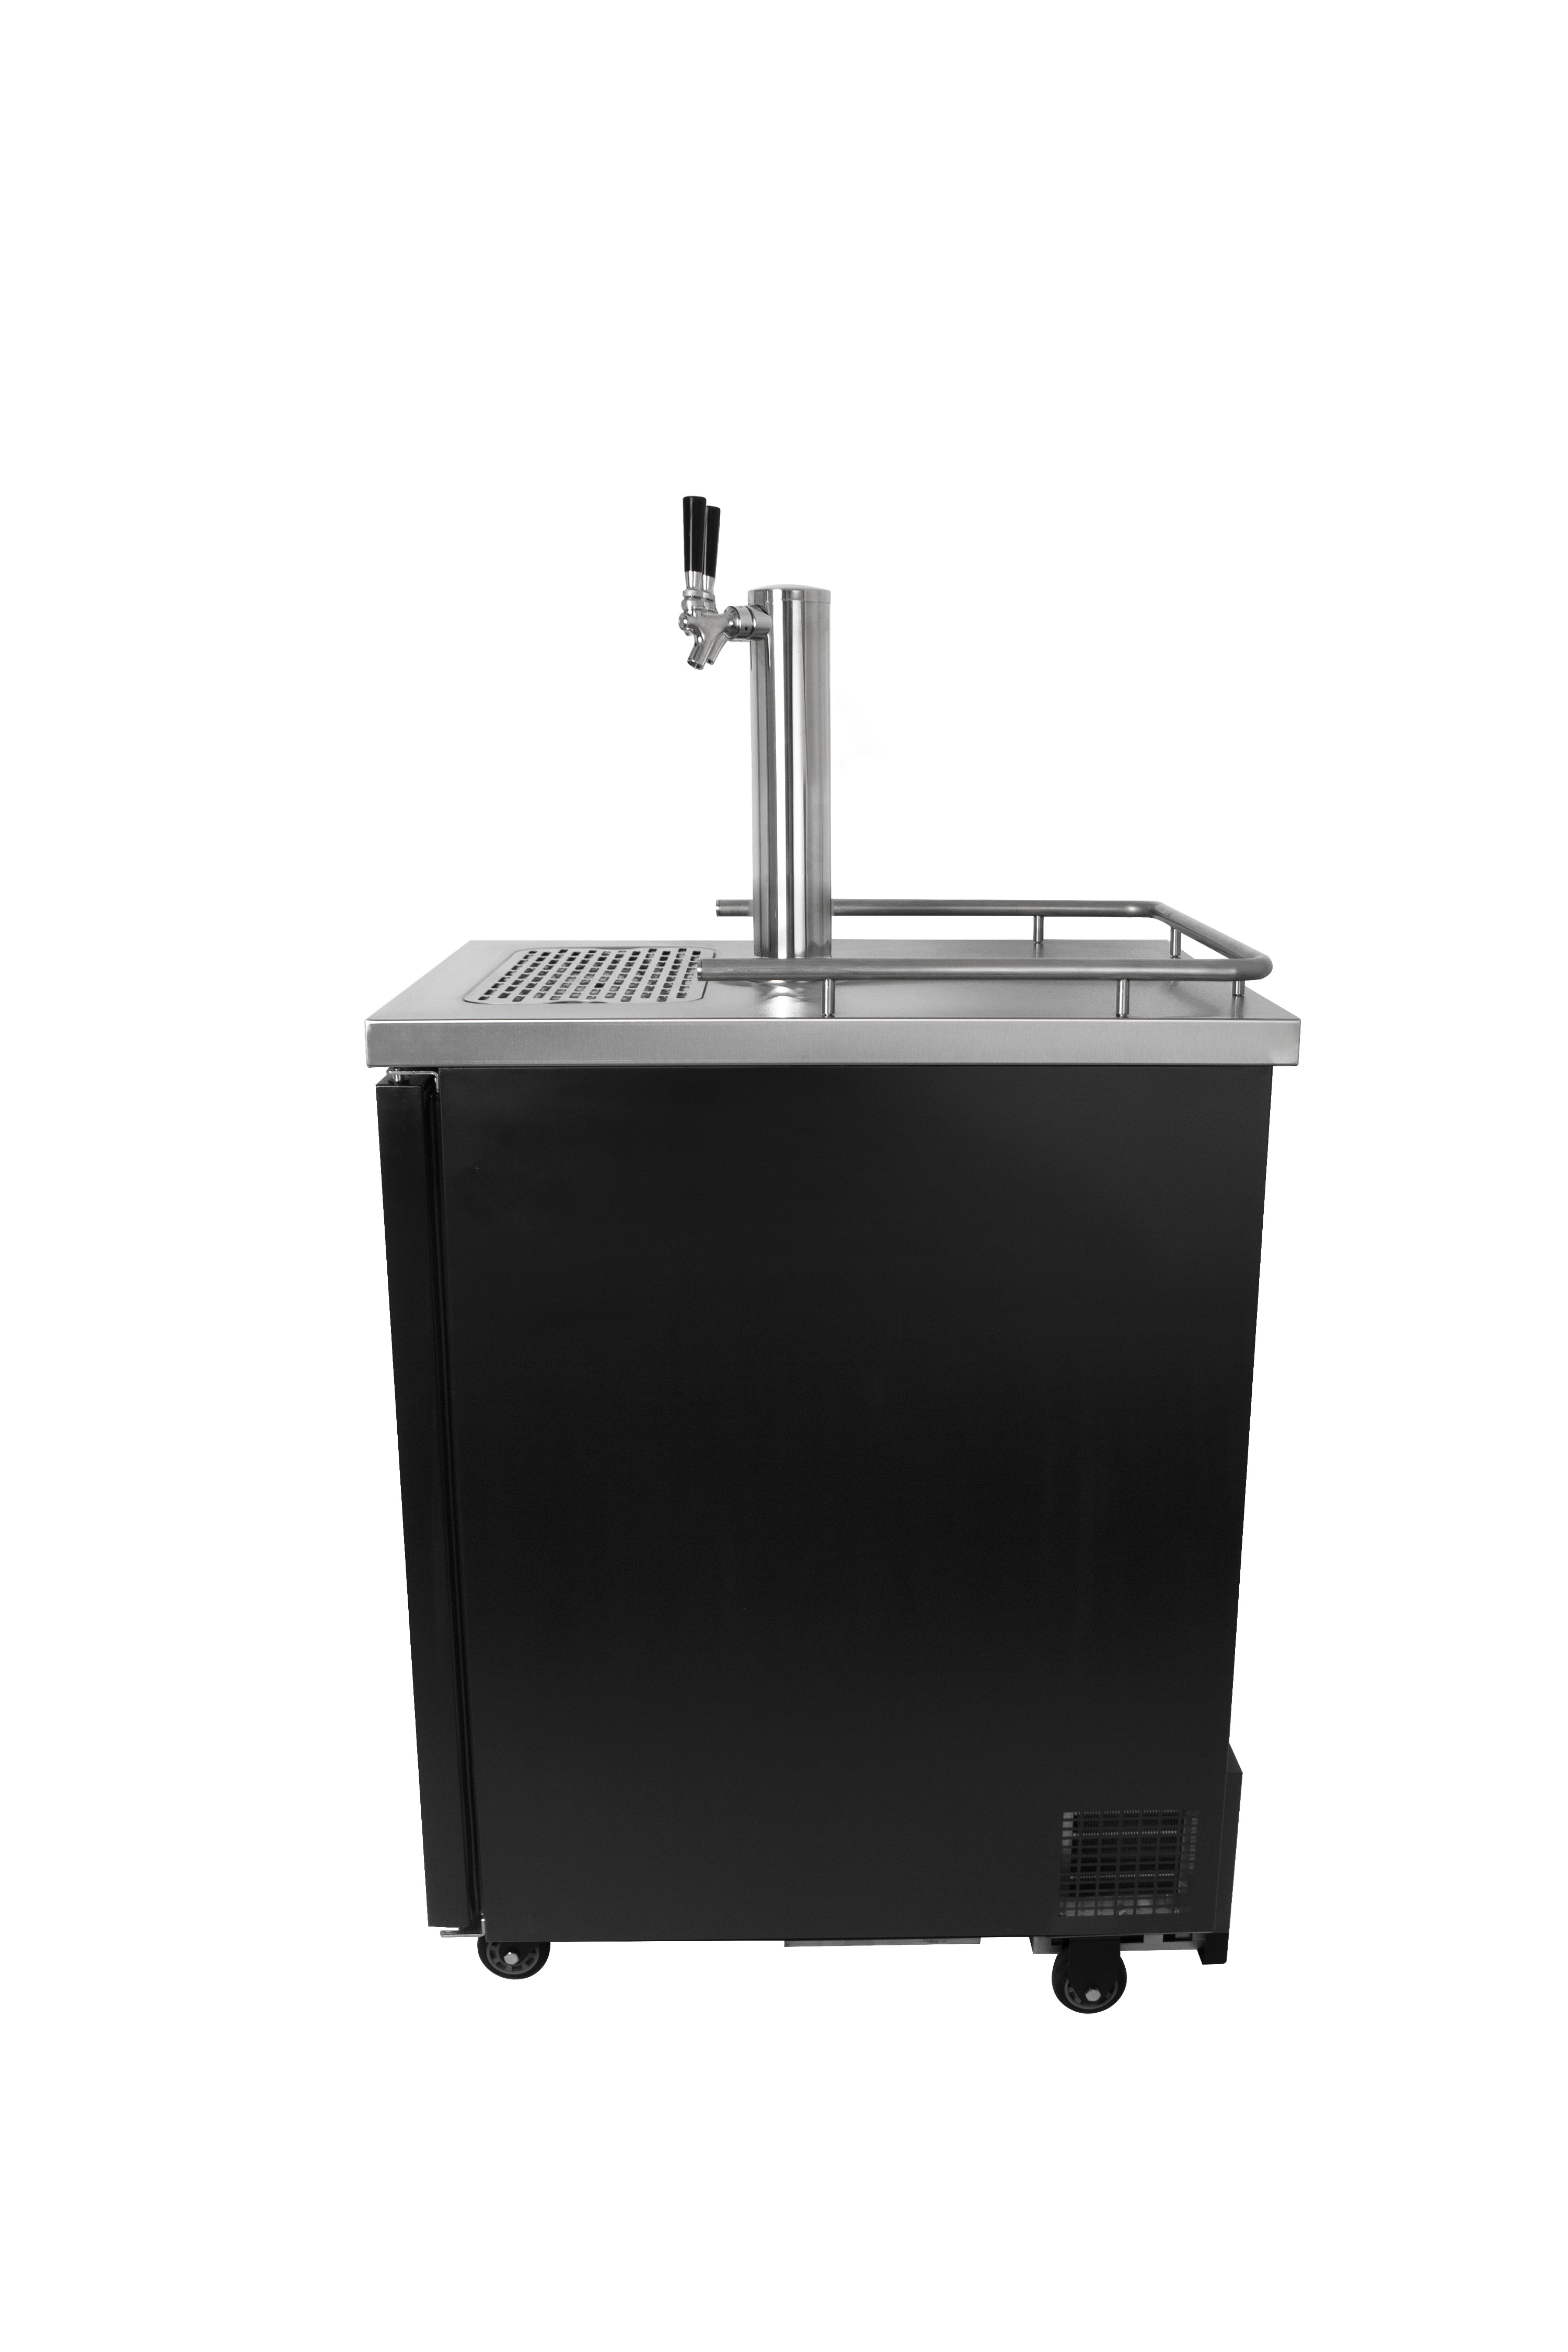 Kegco TCK-1B-2K Beer Dispenser | Restaurant Keg Cooler